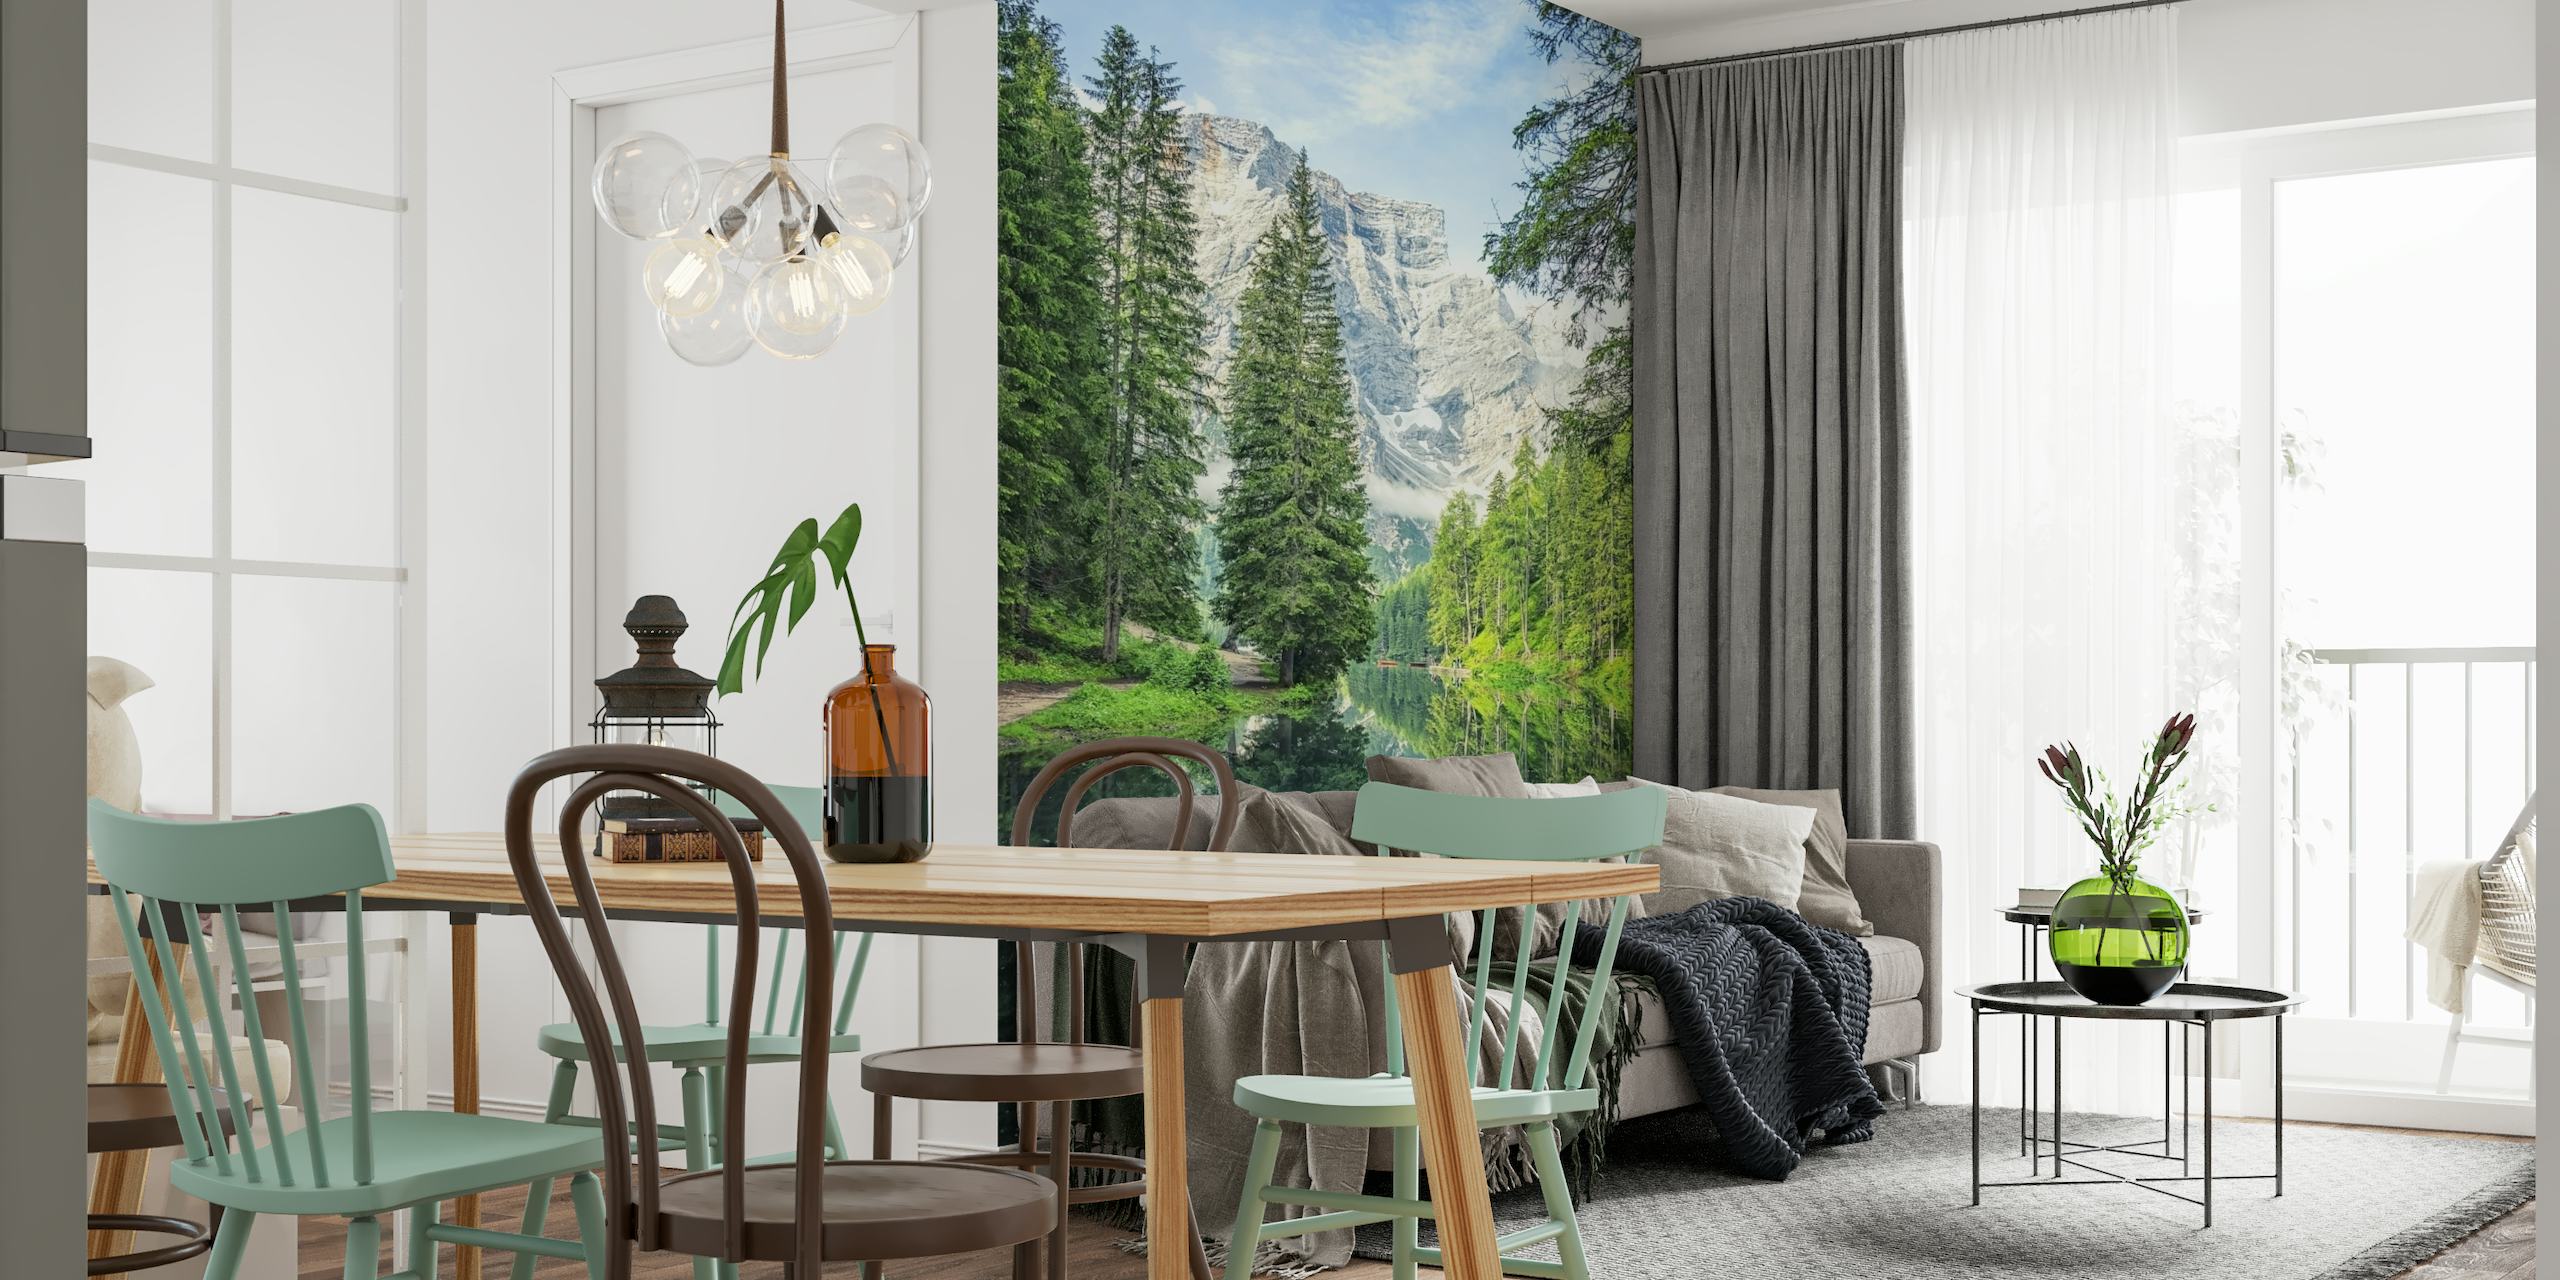 Pragser Wildseen seinämaalaus, joka esittelee alppijärveä ja Dolomiittivuoria